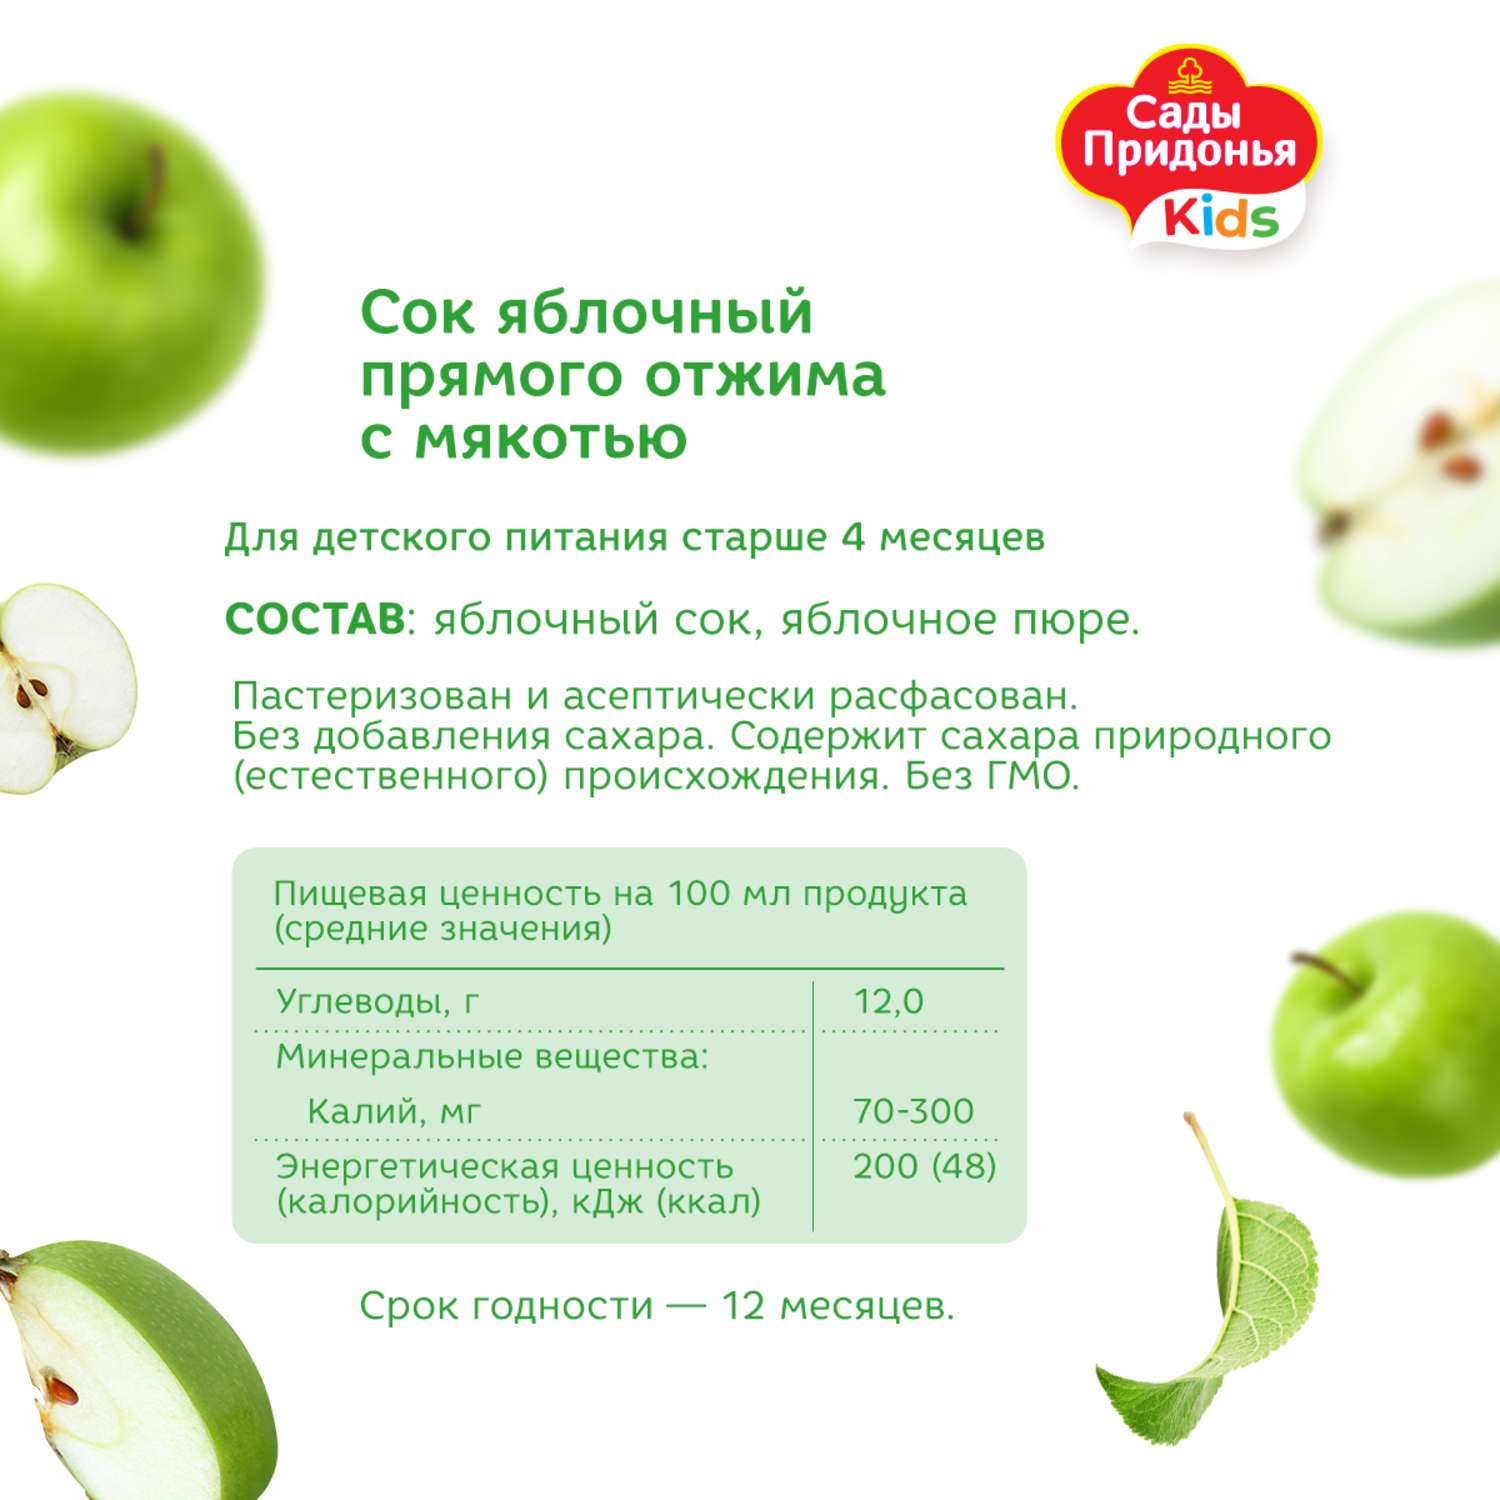 Сок Сады Придонья яблоко прямого отжима с мякотью, 200 мл, с 4 месяцев - фото 3